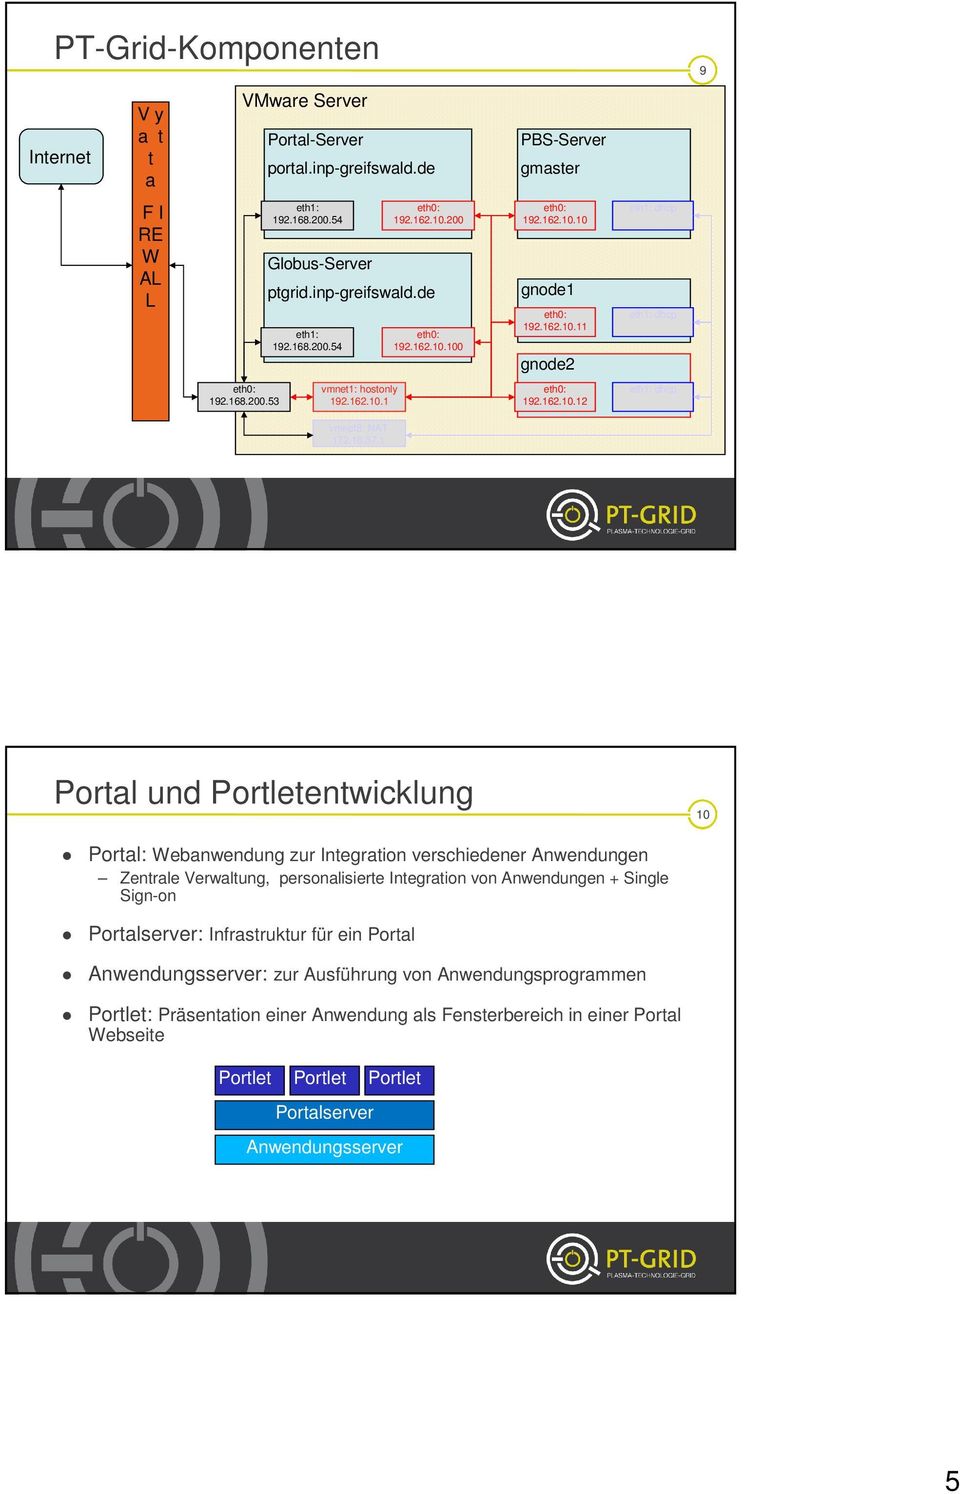 1 Portal und Portletentwicklung 10 Portal: Webanwendung zur Integration verschiedener Anwendungen Zentrale Verwaltung, personalisierte Integration von Anwendungen + Single Sign-on Portalserver: